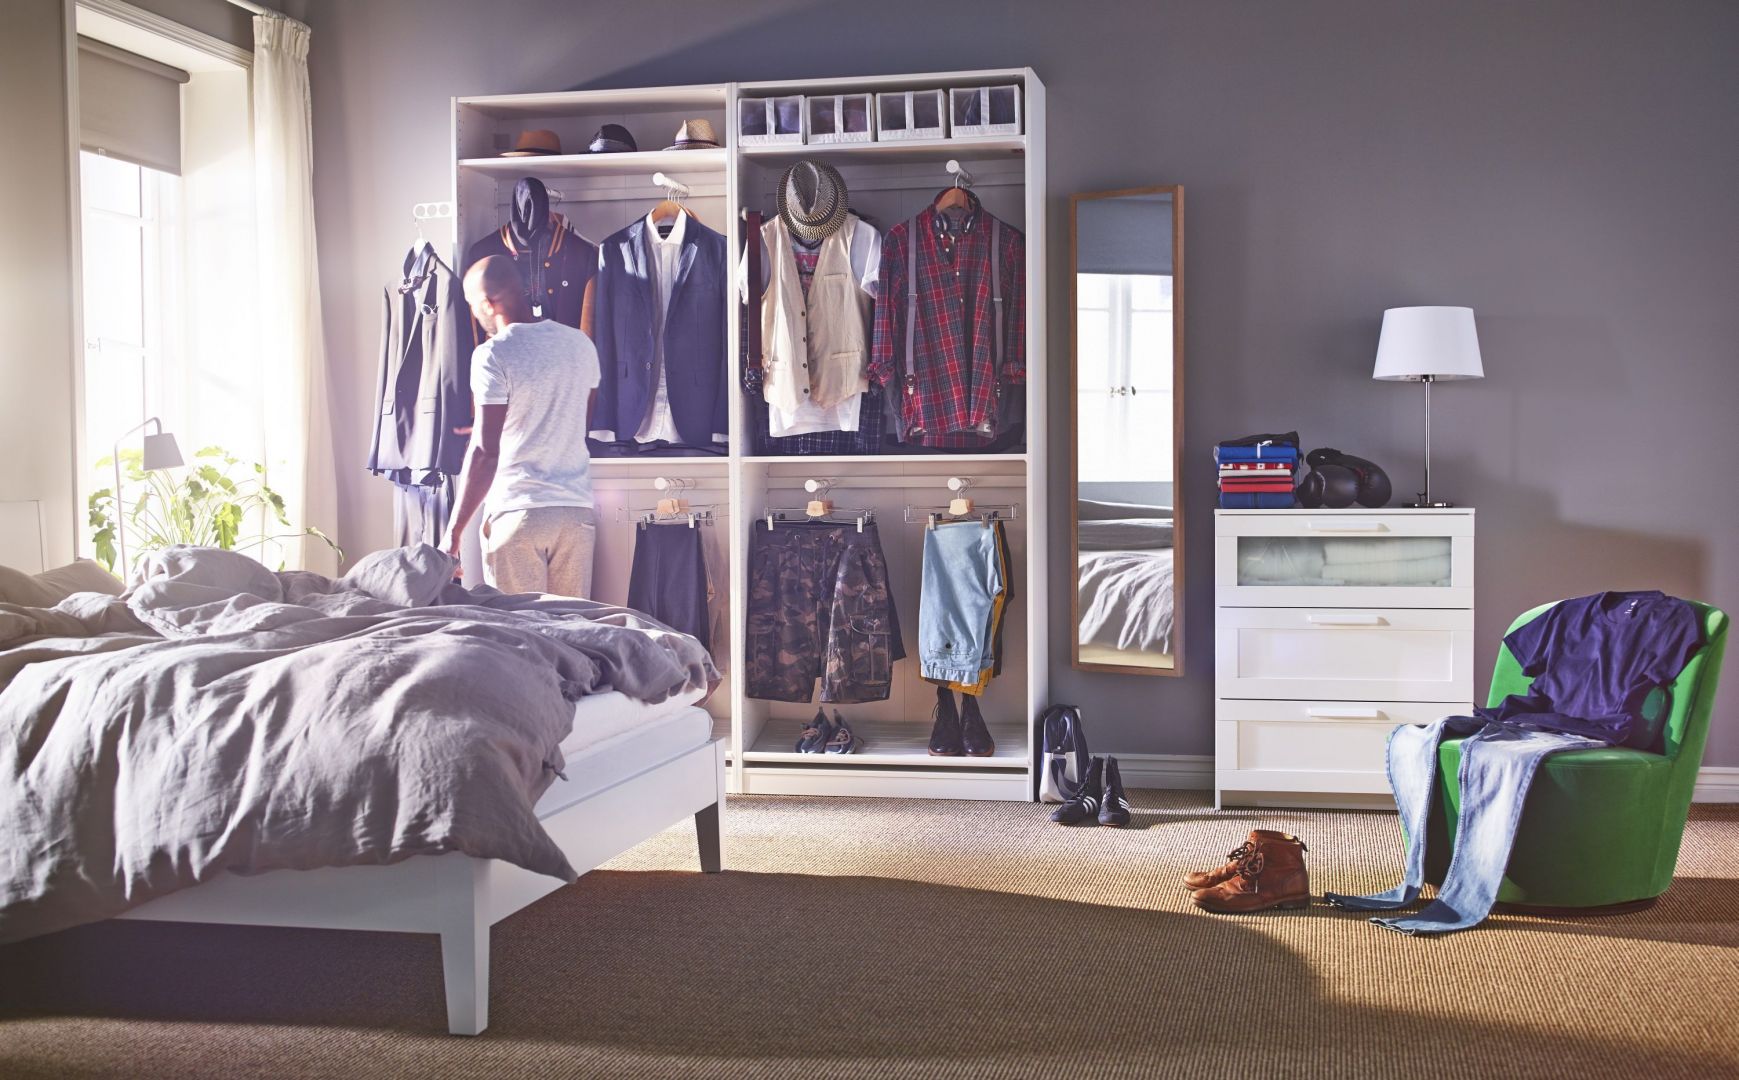 System szaf Pax marki IKEA pozwala na dopasowanie jej wnętrza do własnych potrzeb. Specjalny planner online sprawi, że zaplanujemy szafę nie wychodząc z domu. Fot. IKEA